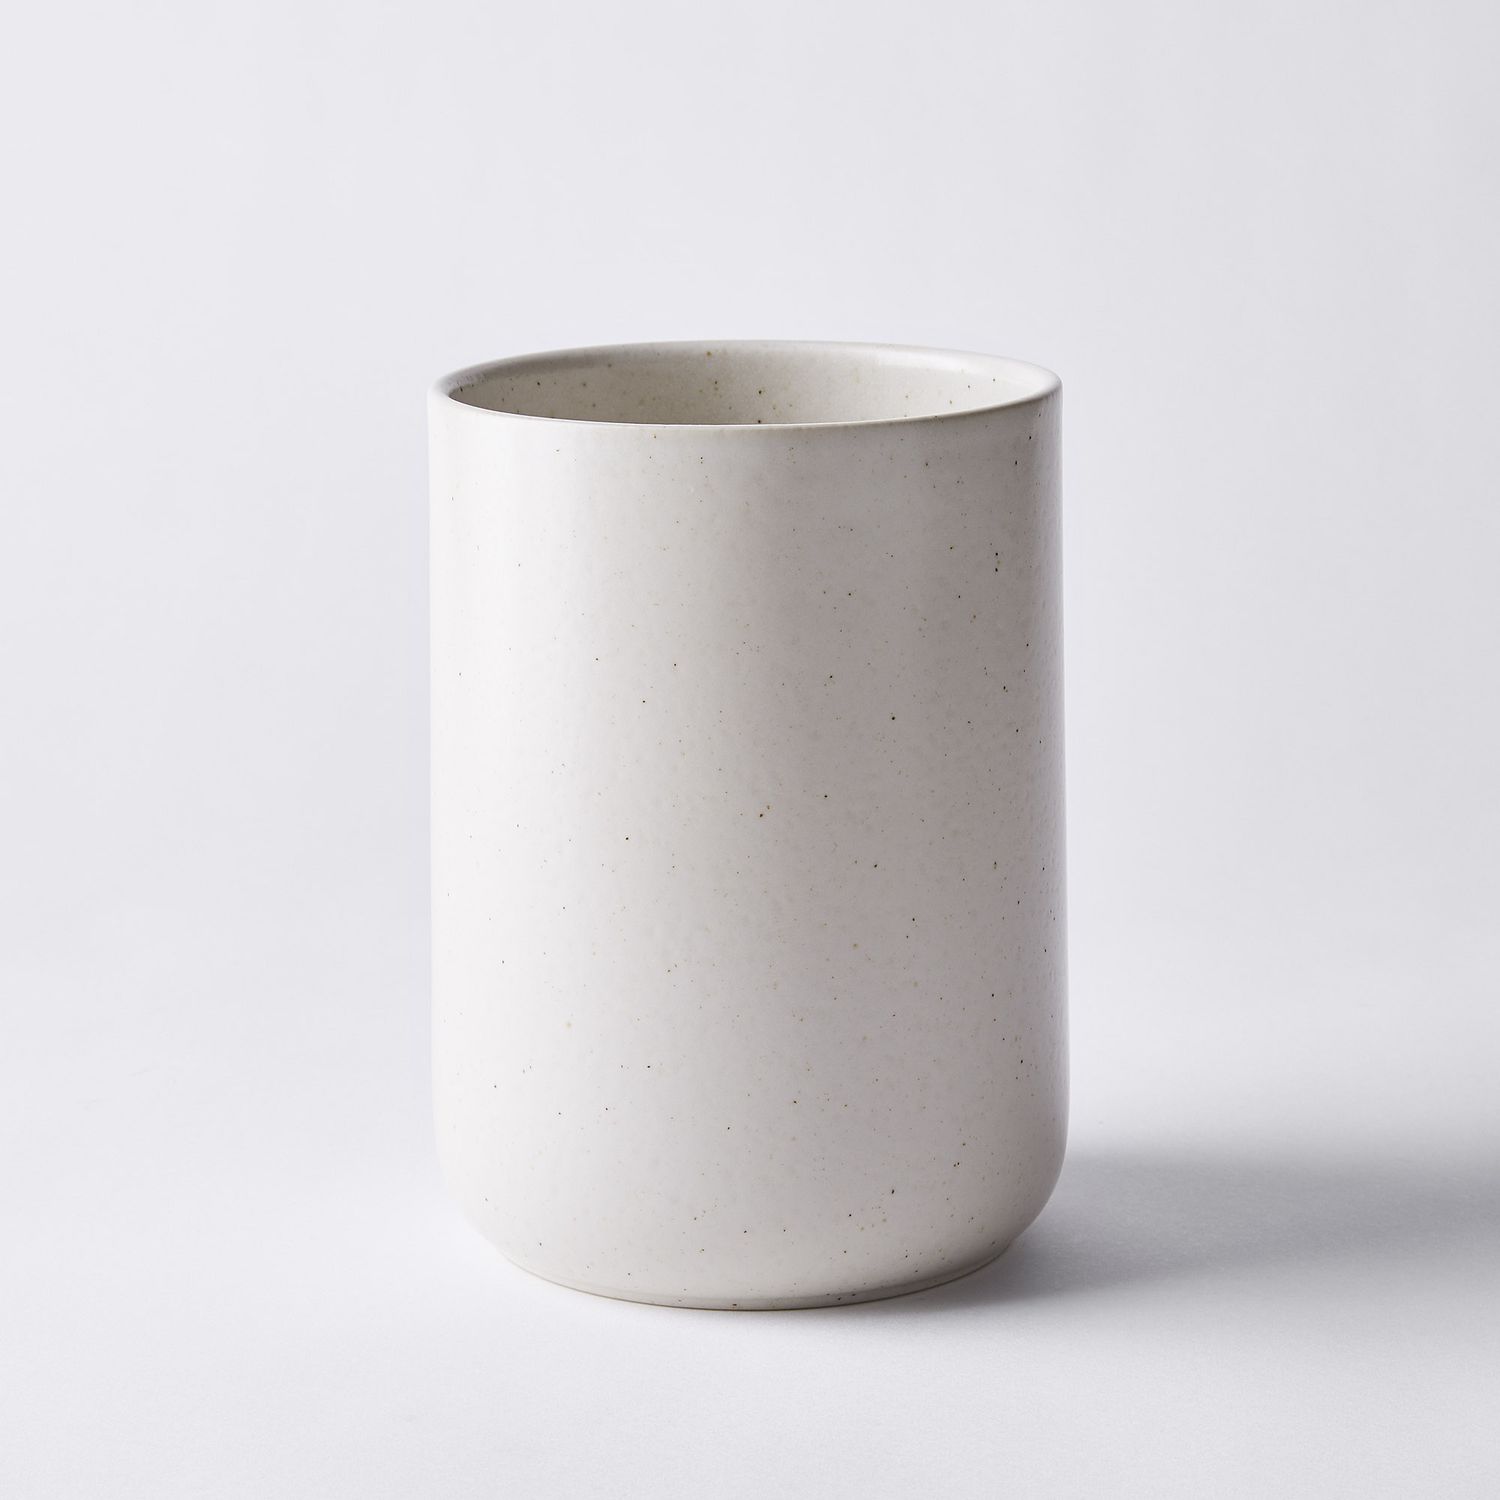 Stoneware Pottery Utensil Holder or Wine Chiller in Mocha Cream